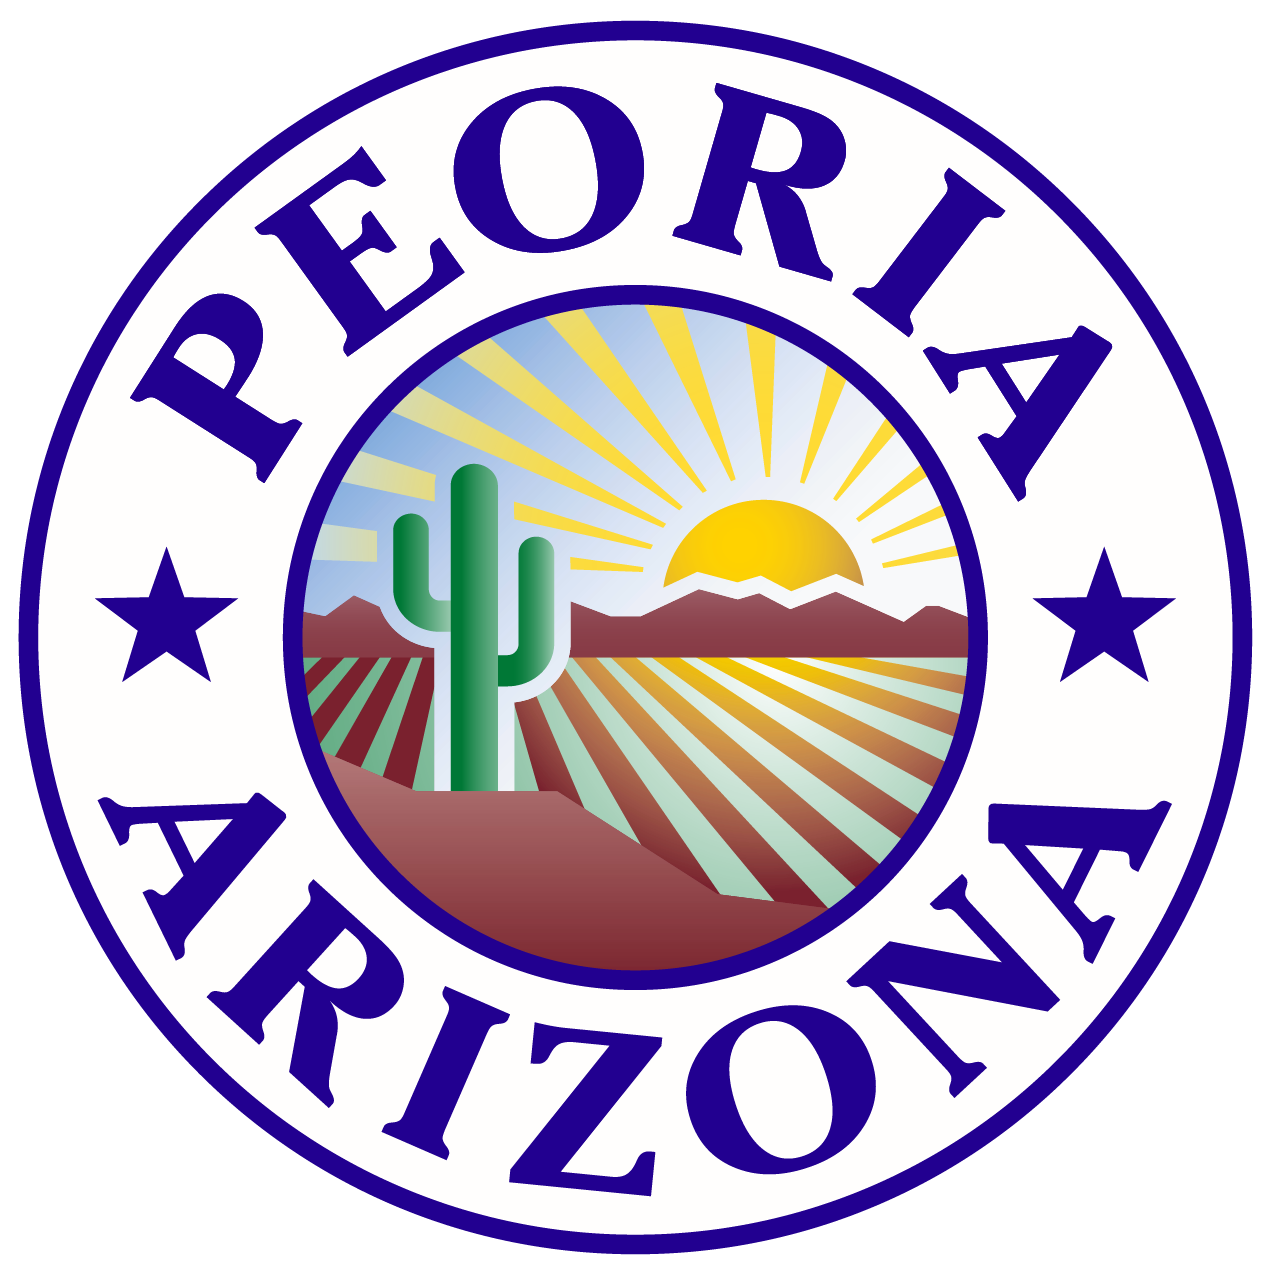 Peoria logo